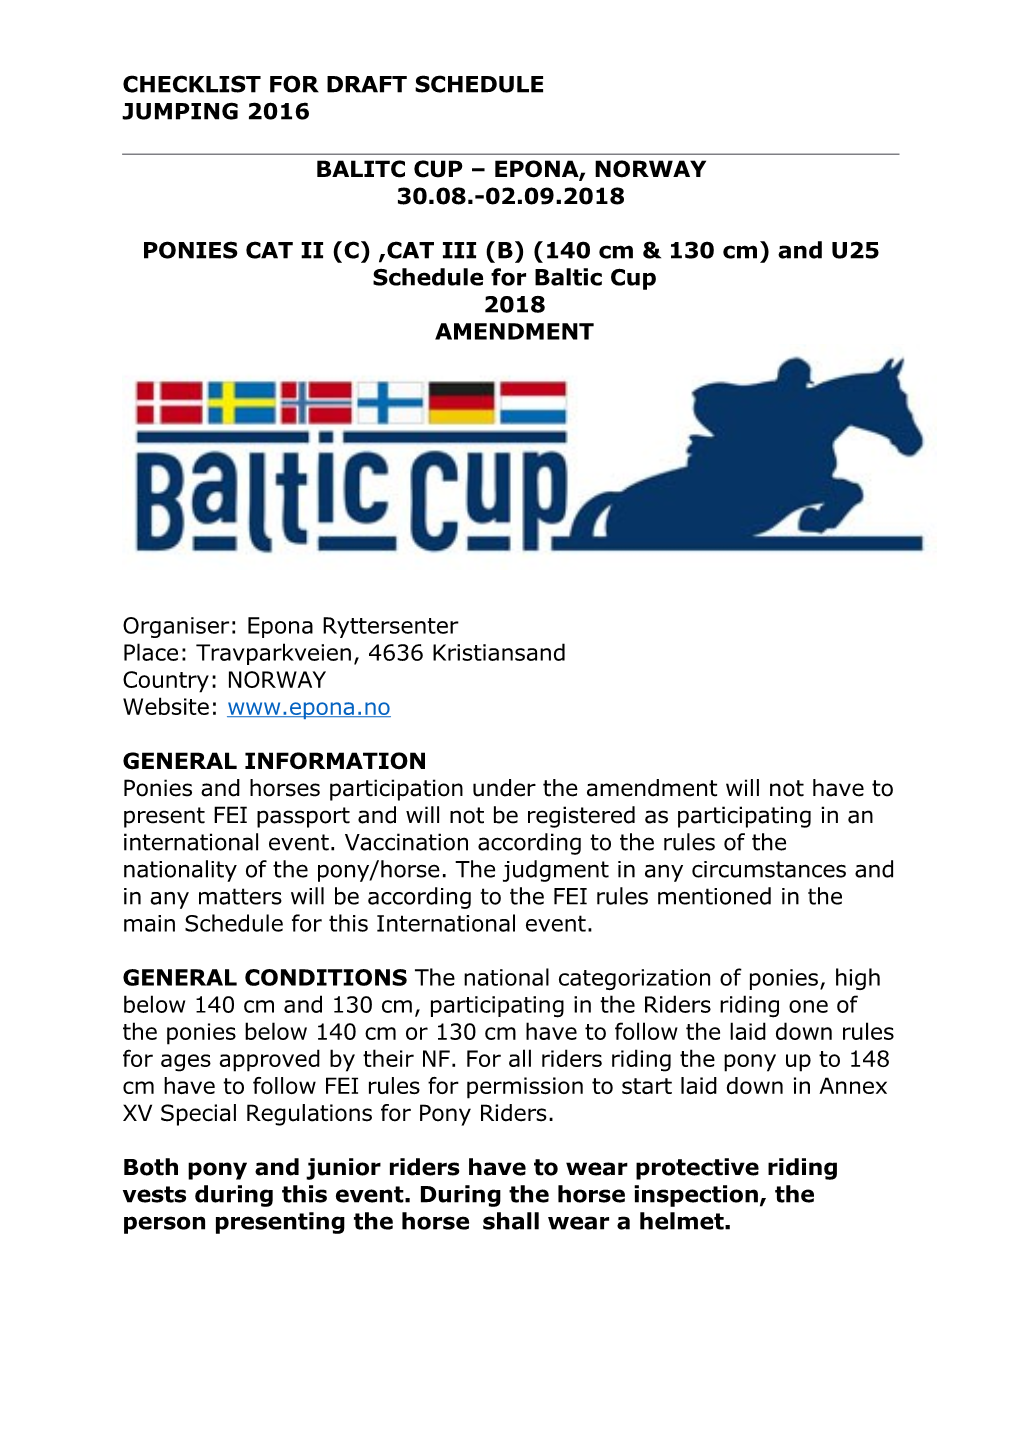 Baltic Cup Epona Kat II III Og U25 2018